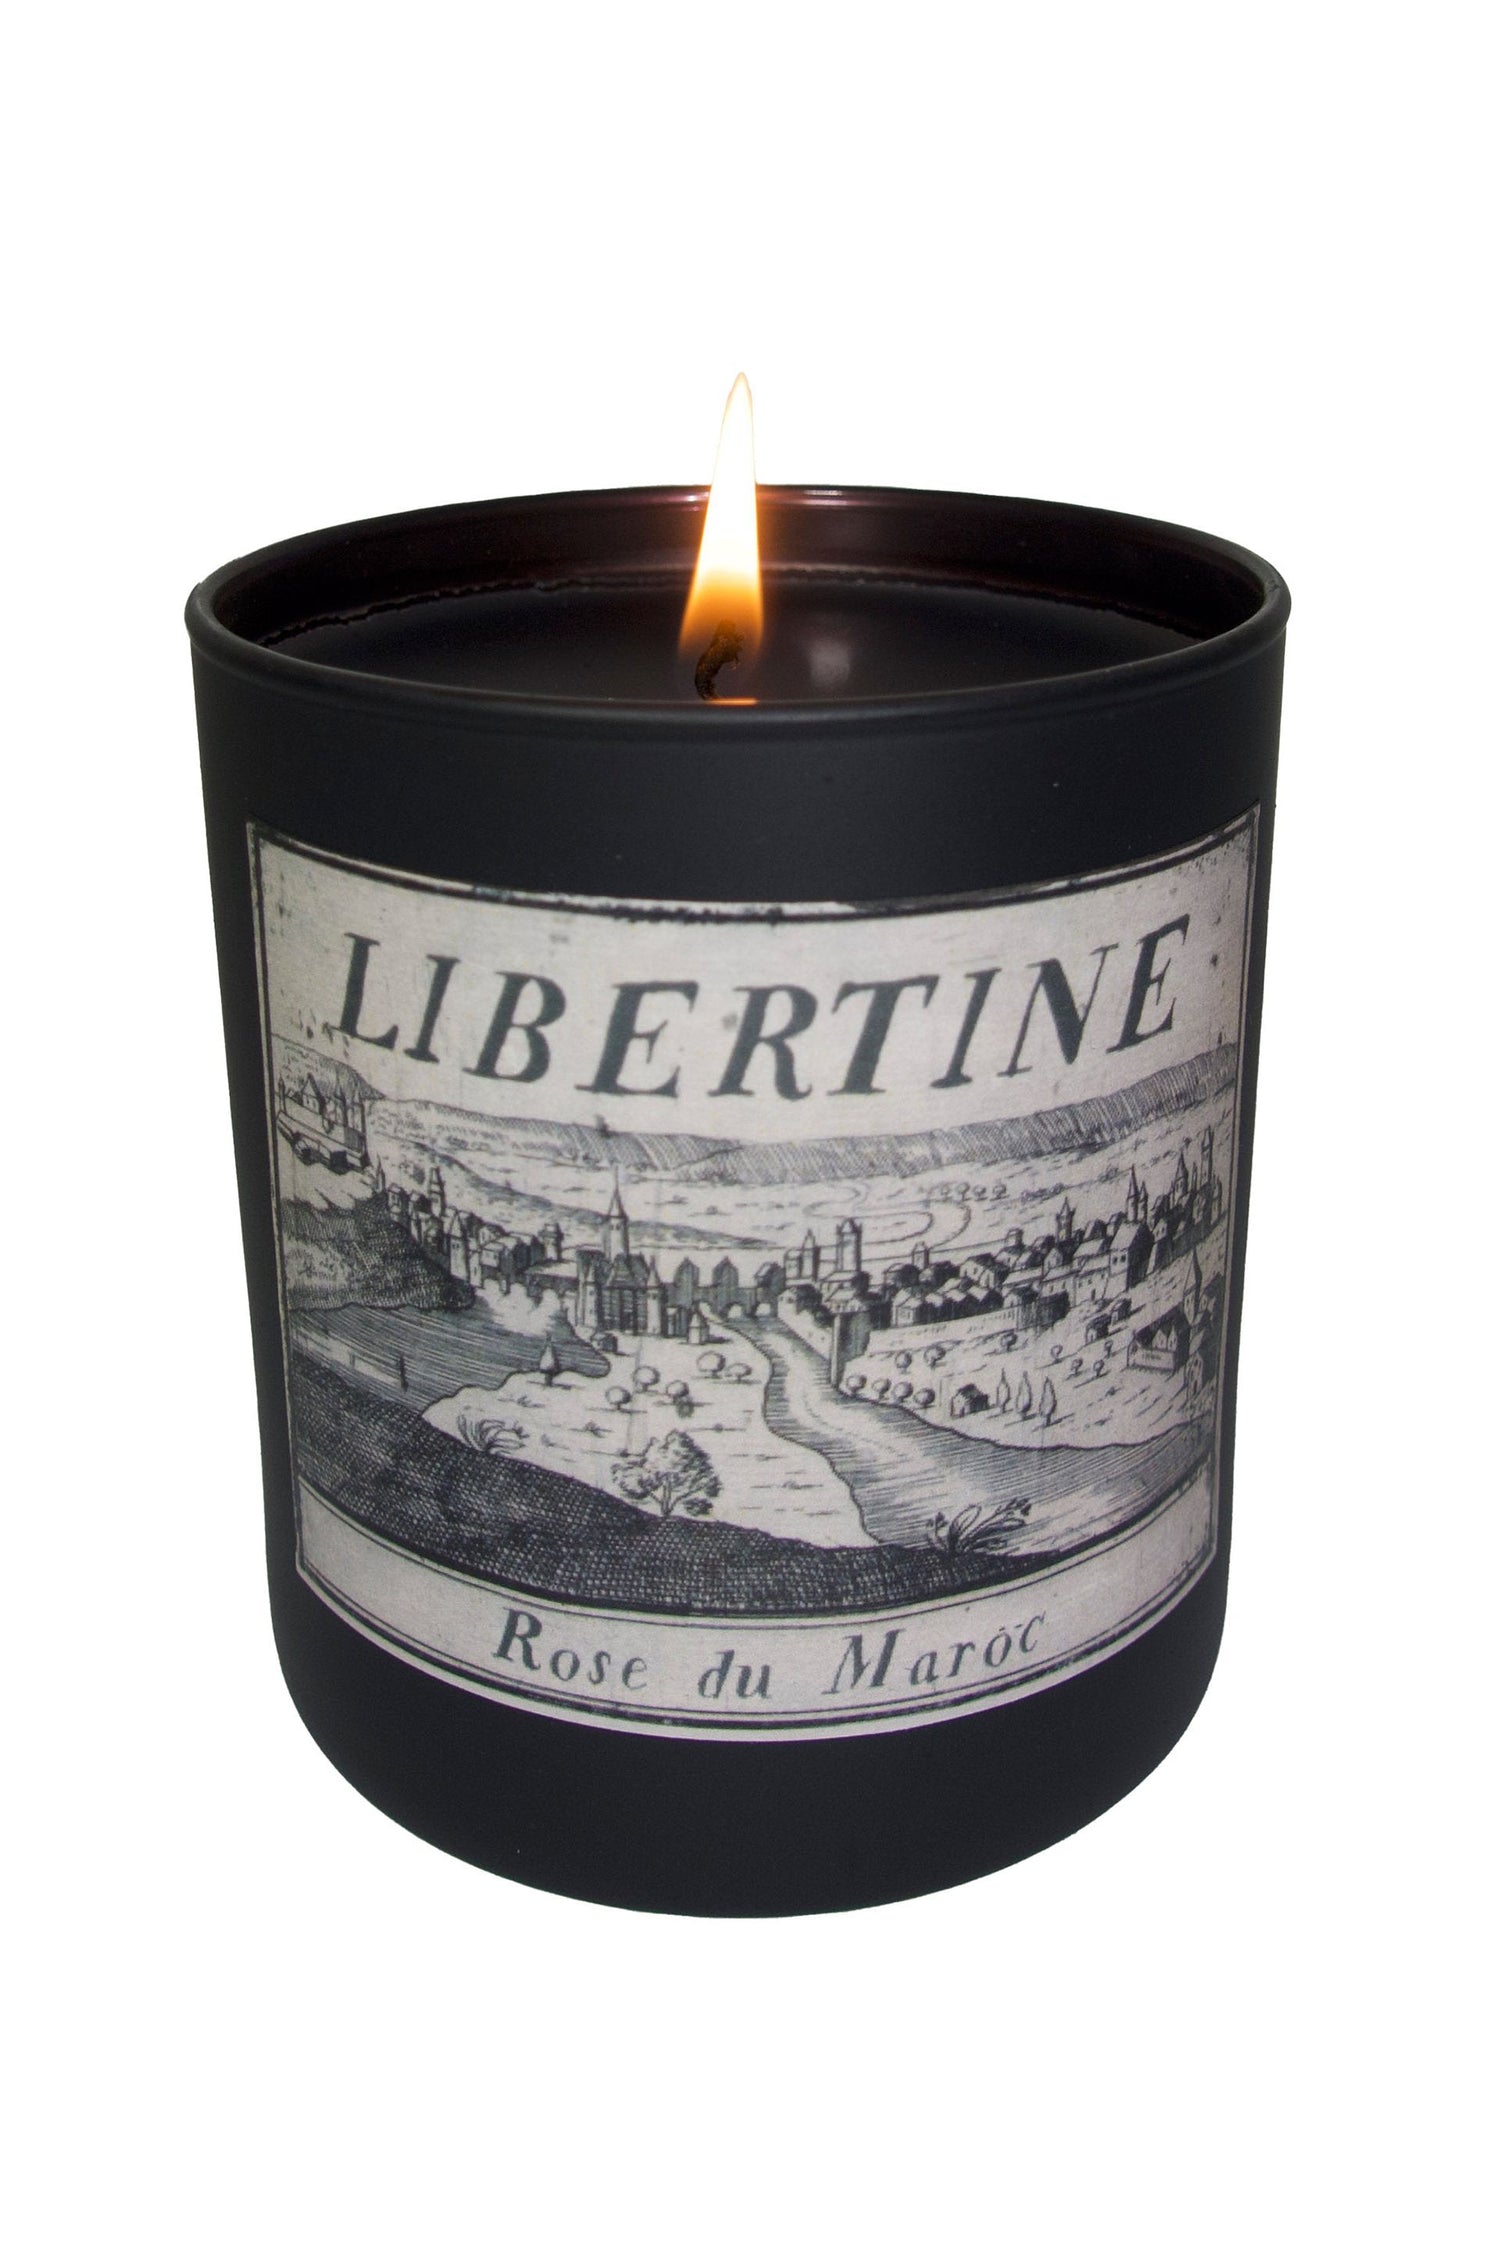 Rose Du Maroc Libertine Candle - Home - Libertine